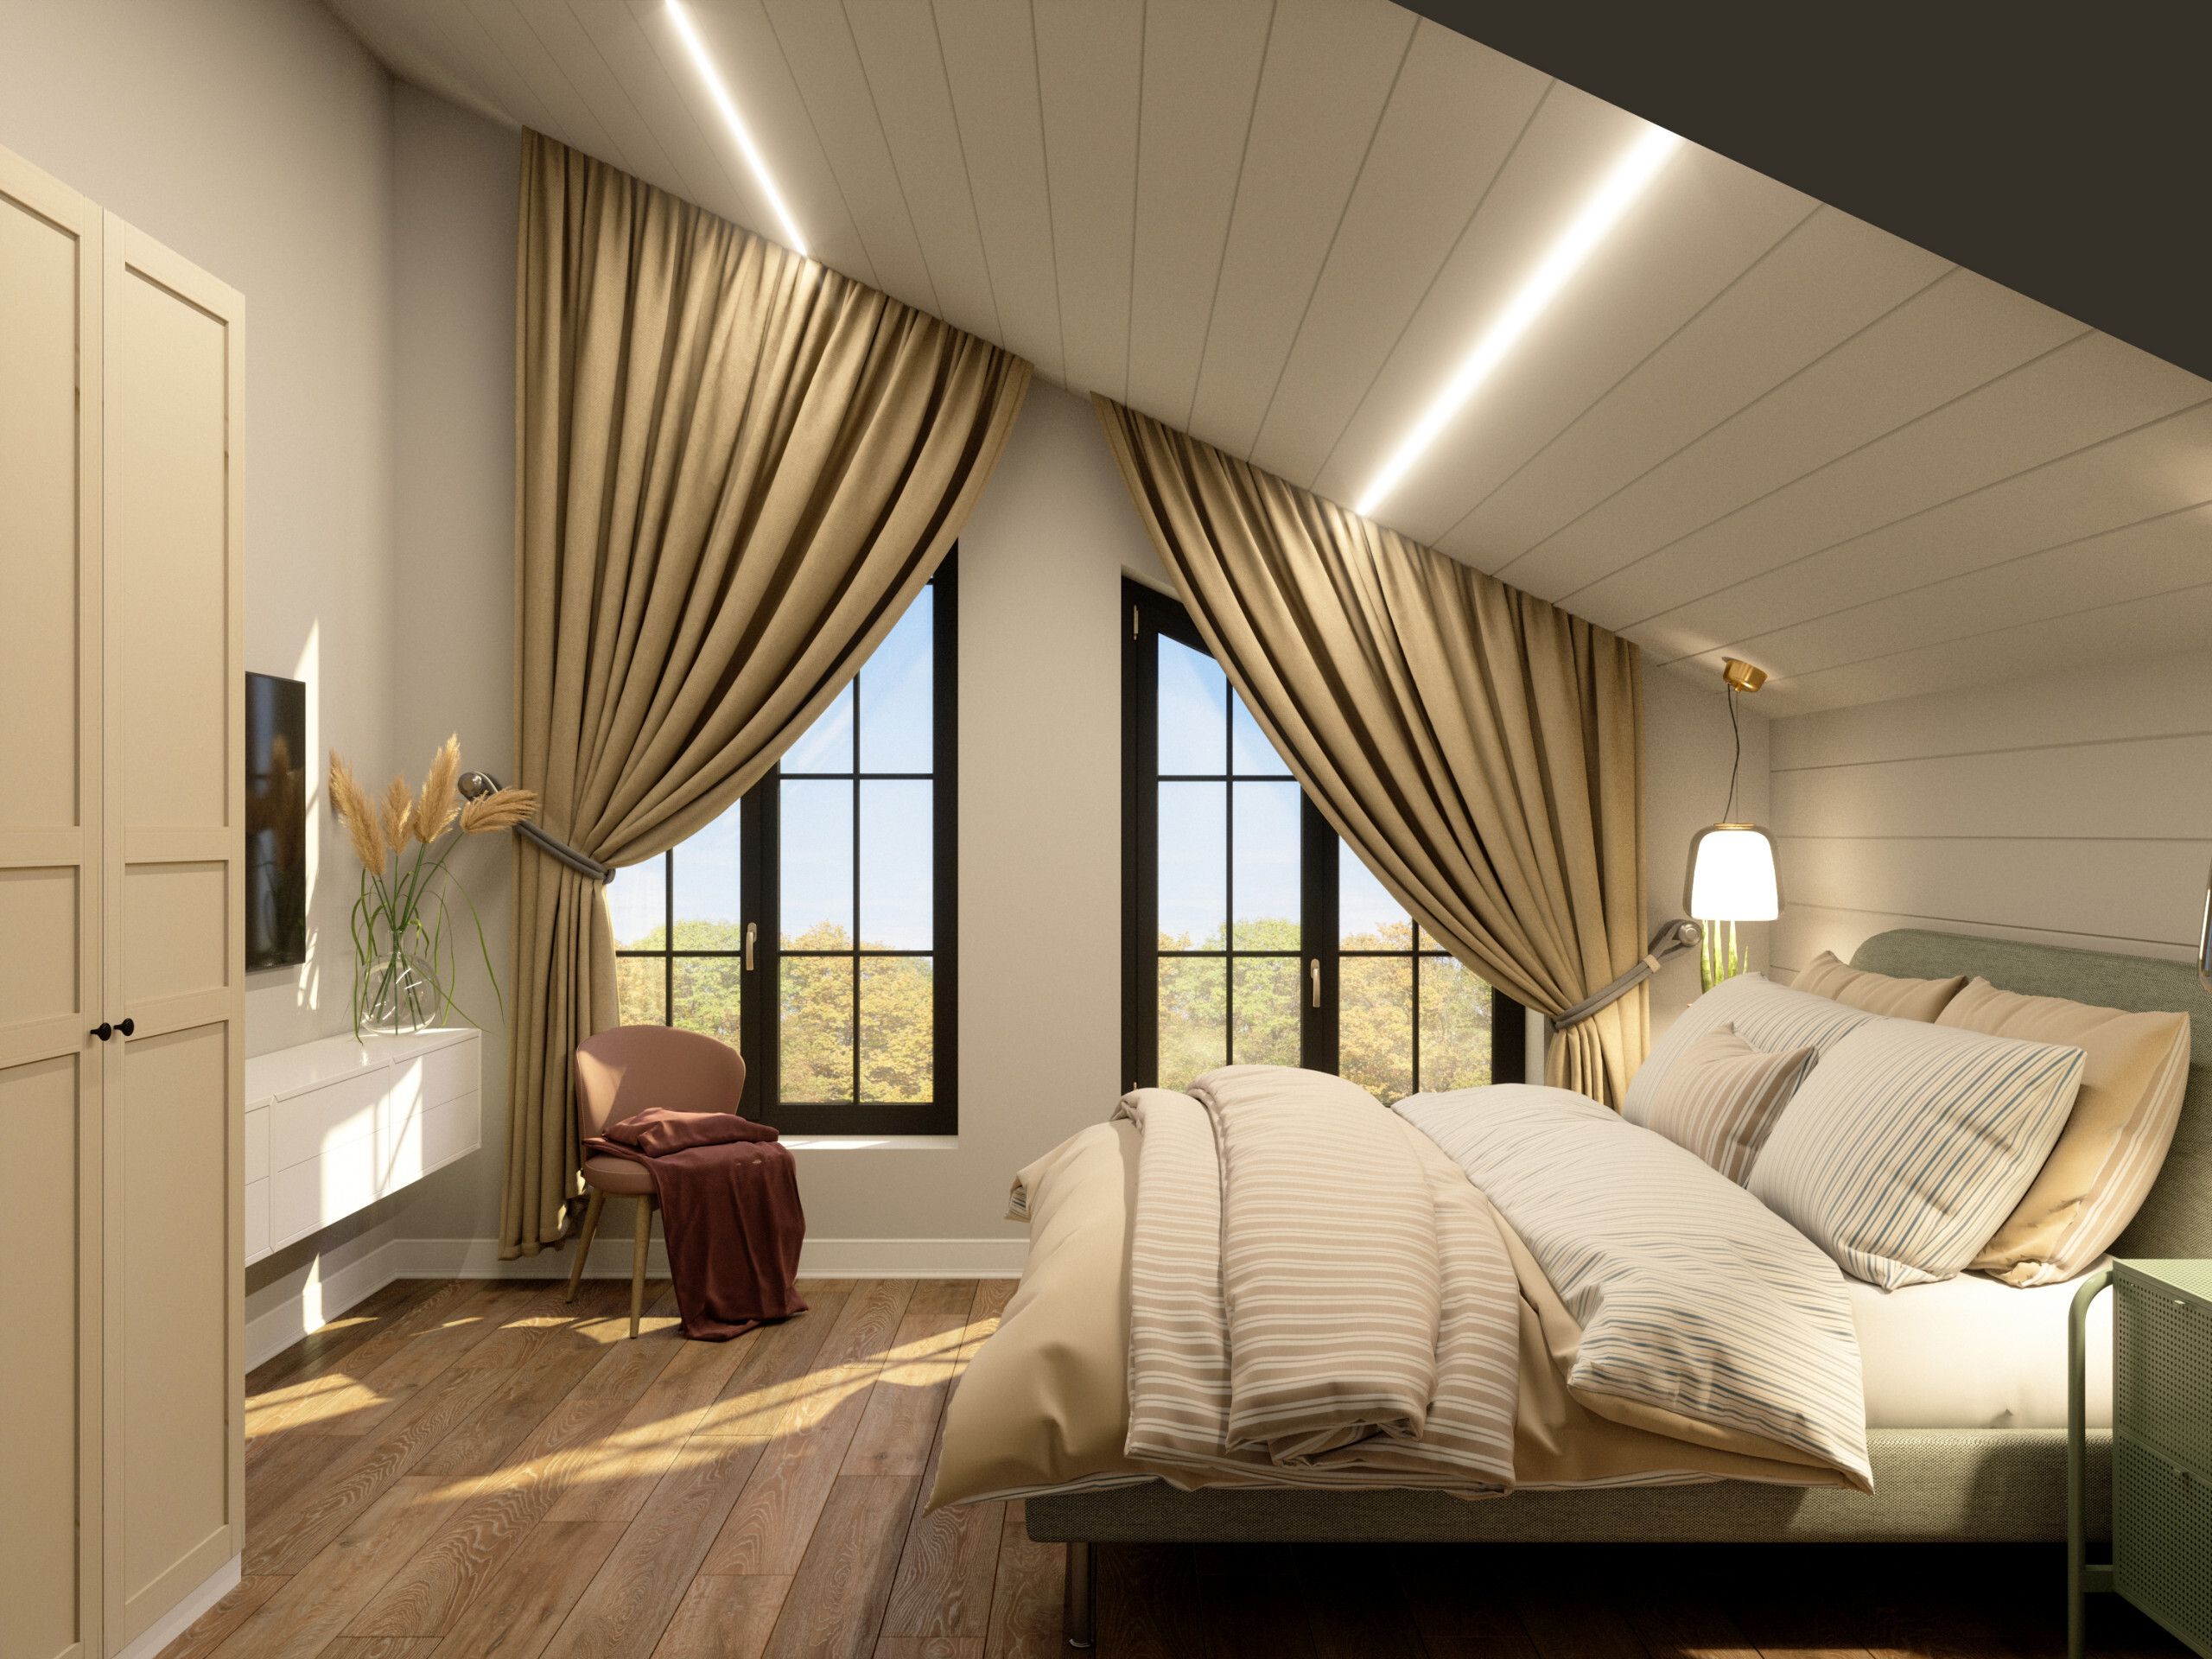 Интерьер спальни с рейками с подсветкой, подсветкой настенной, подсветкой светодиодной и светильниками над кроватью в современном стиле